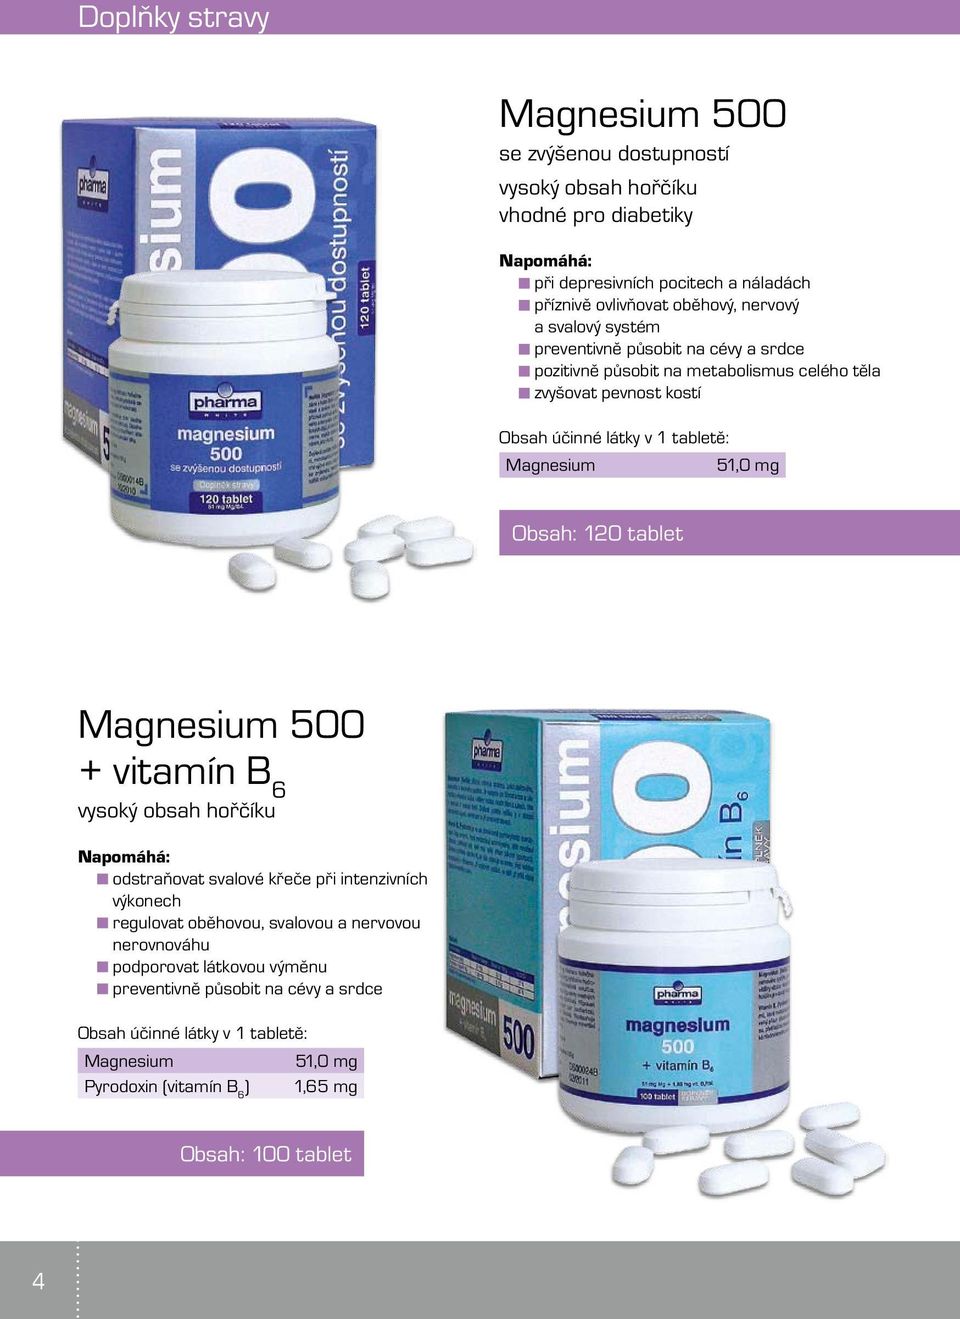 kostí Magnesium 51,0 mg Obsah: 120 tablet Magnesium 500 + vitamín B 6 vysoký obsah hořčíku odstraňovat svalové křeče při intenzivních výkonech